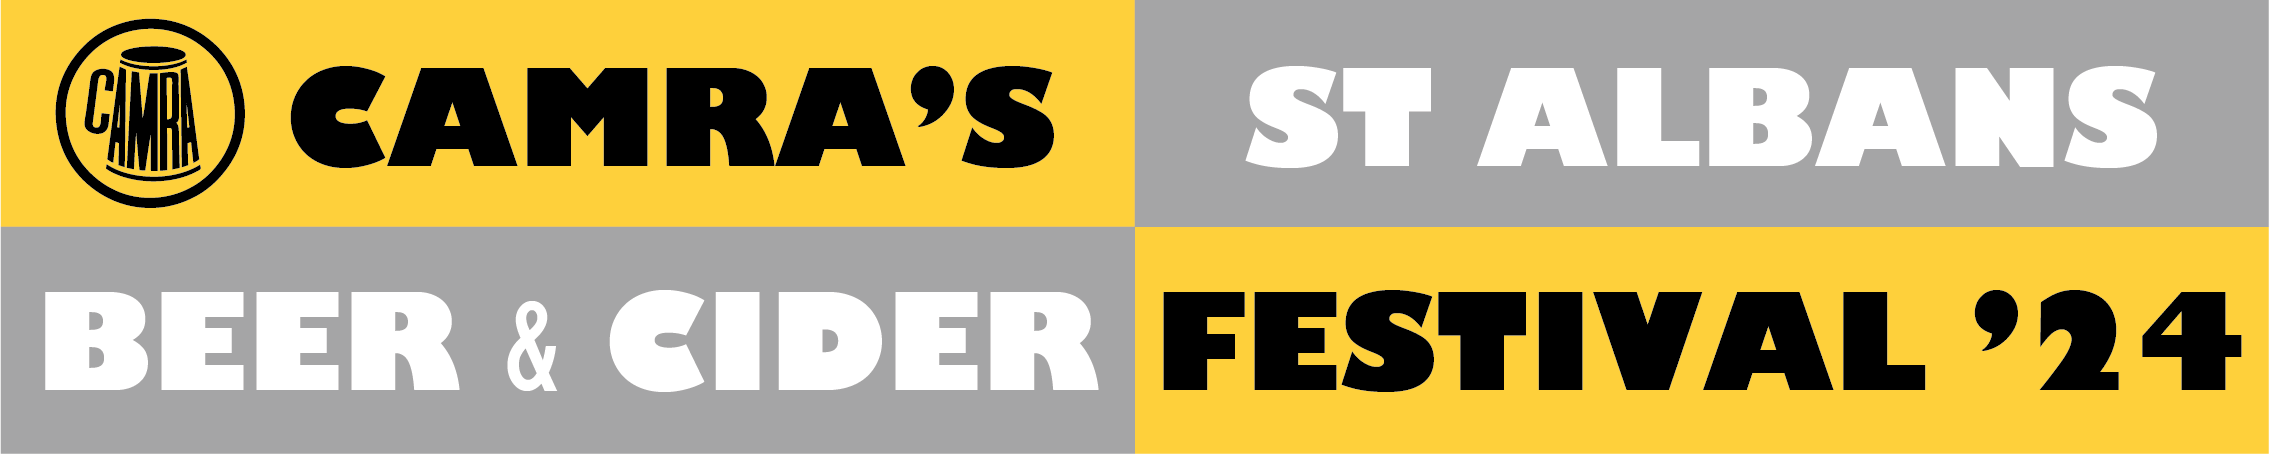 St Albans Beer & Cider Festival 2024 logo